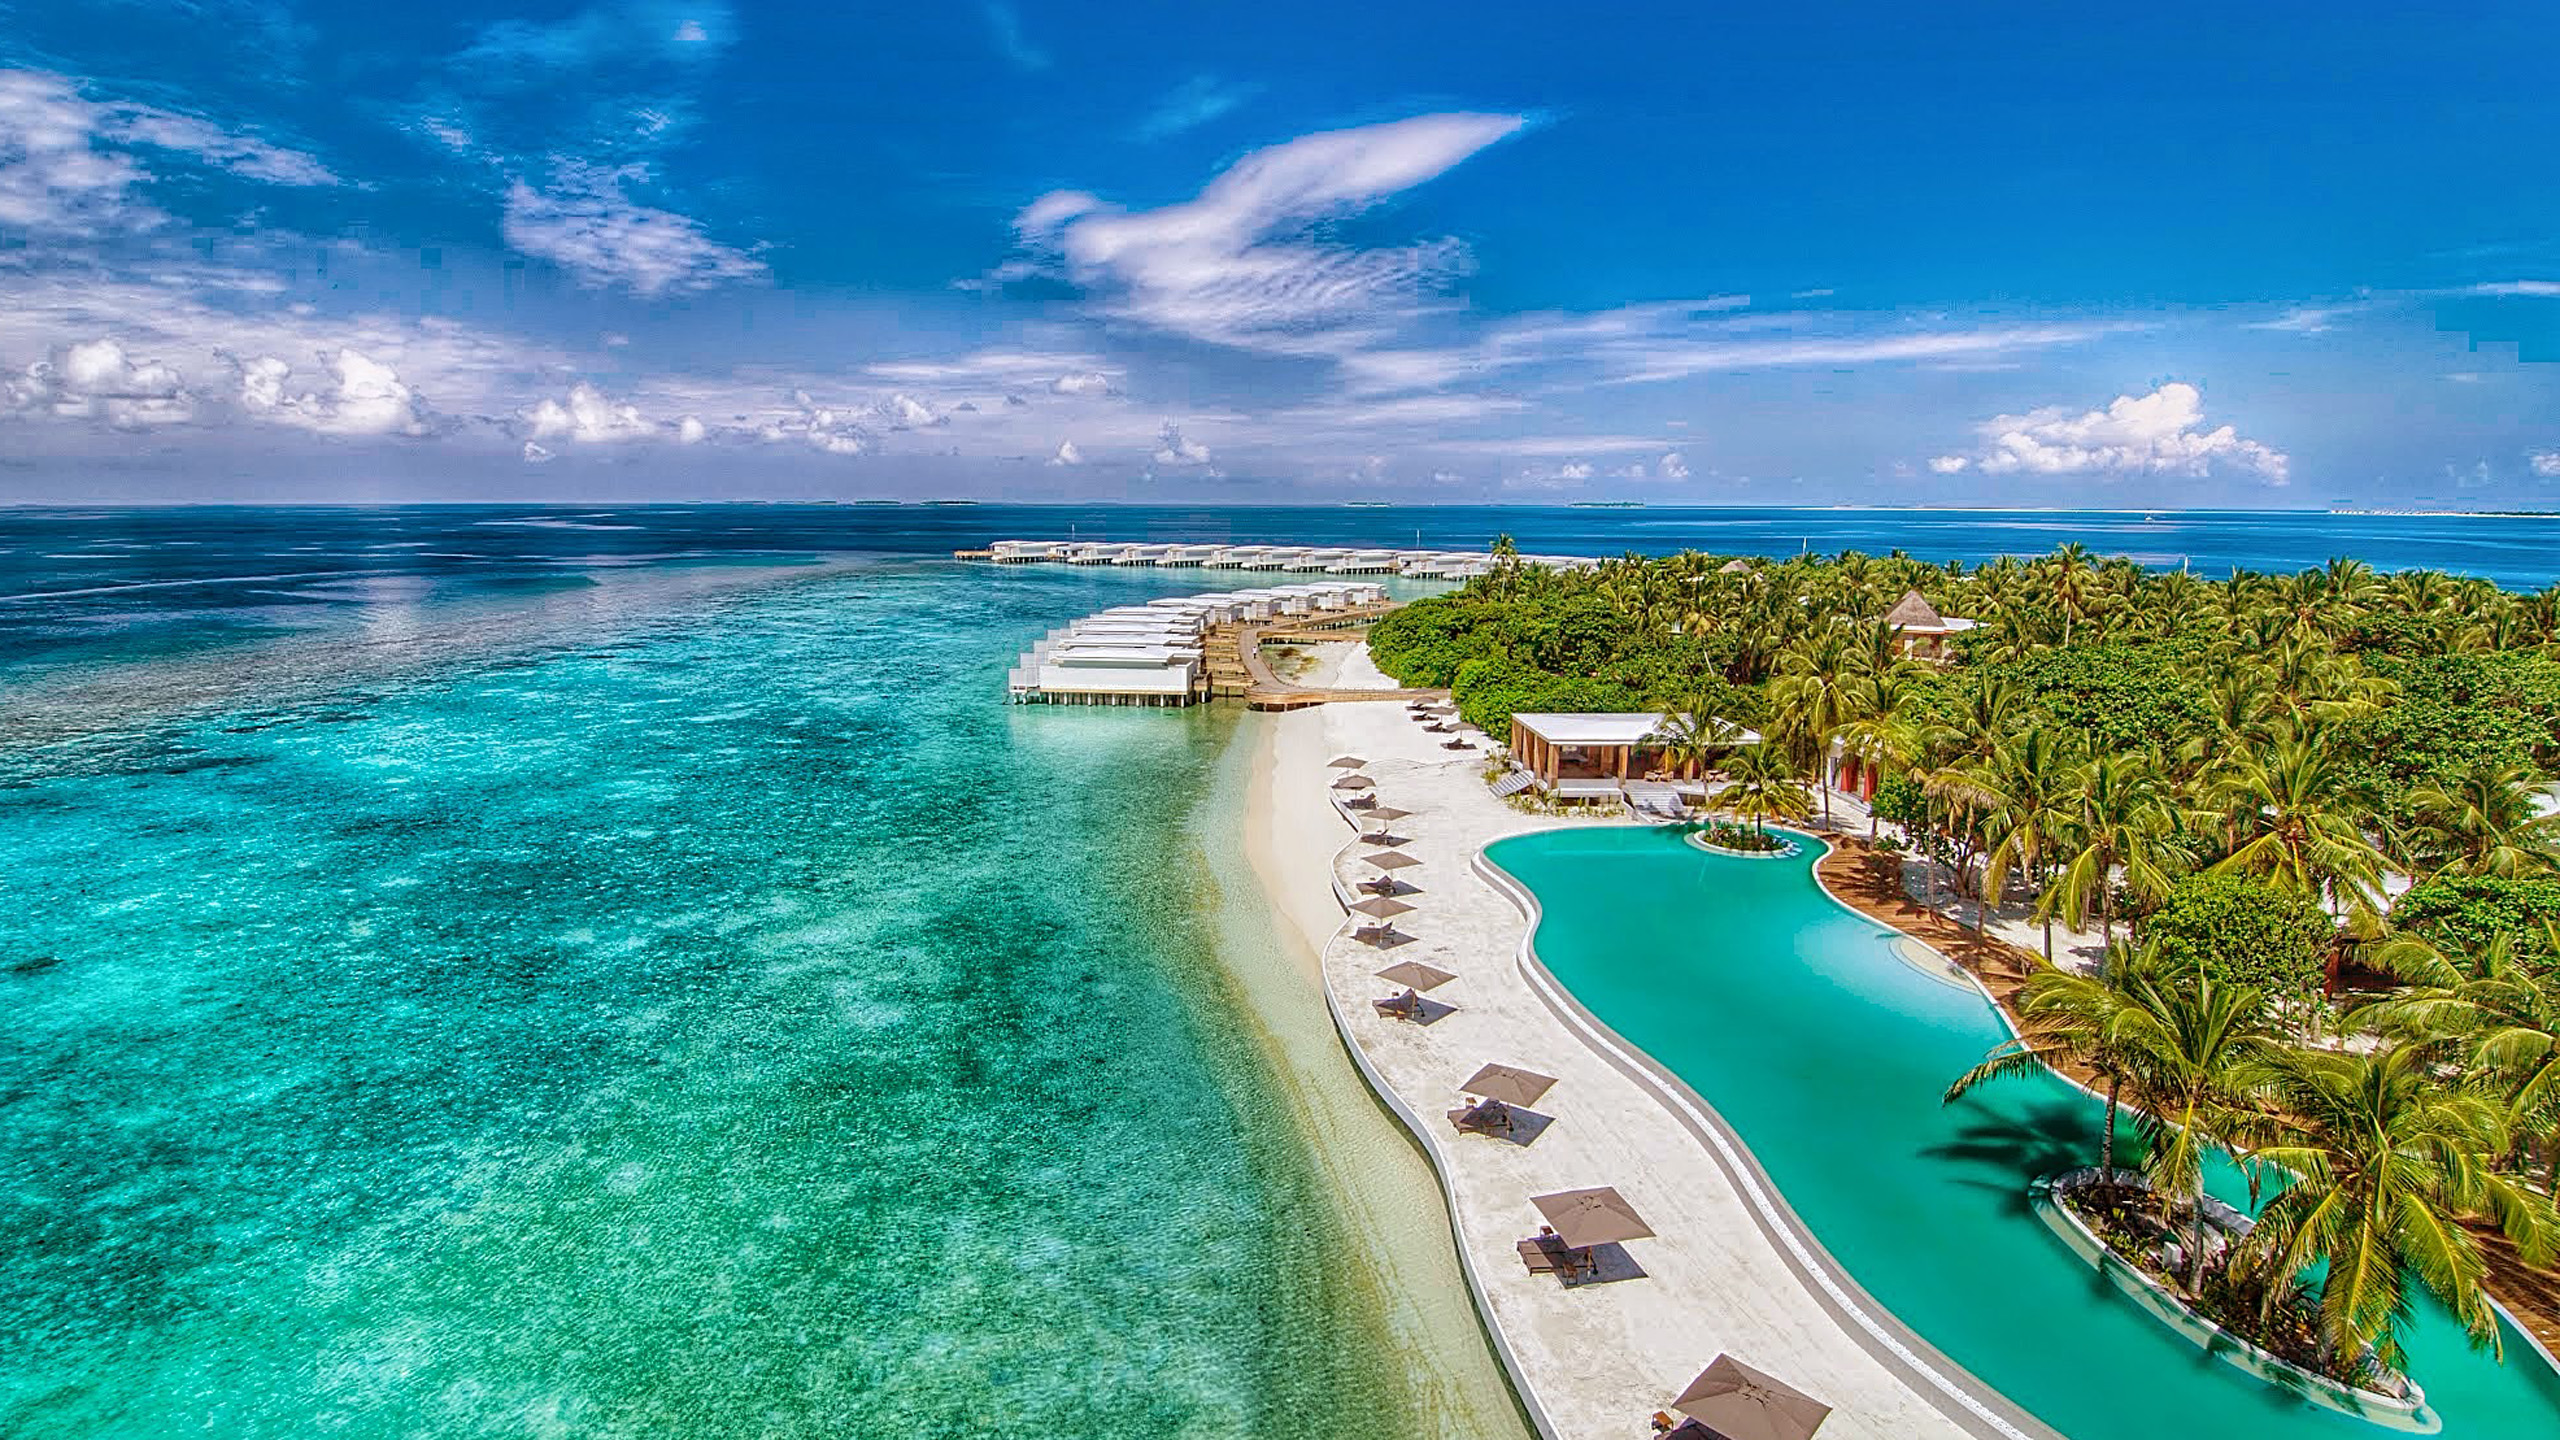 Luxury island. Каафу Атолл Мальдивы. Испания Мальдивы. Индийский океан Мальдивы. Мальдивские острова, Мальдивы.